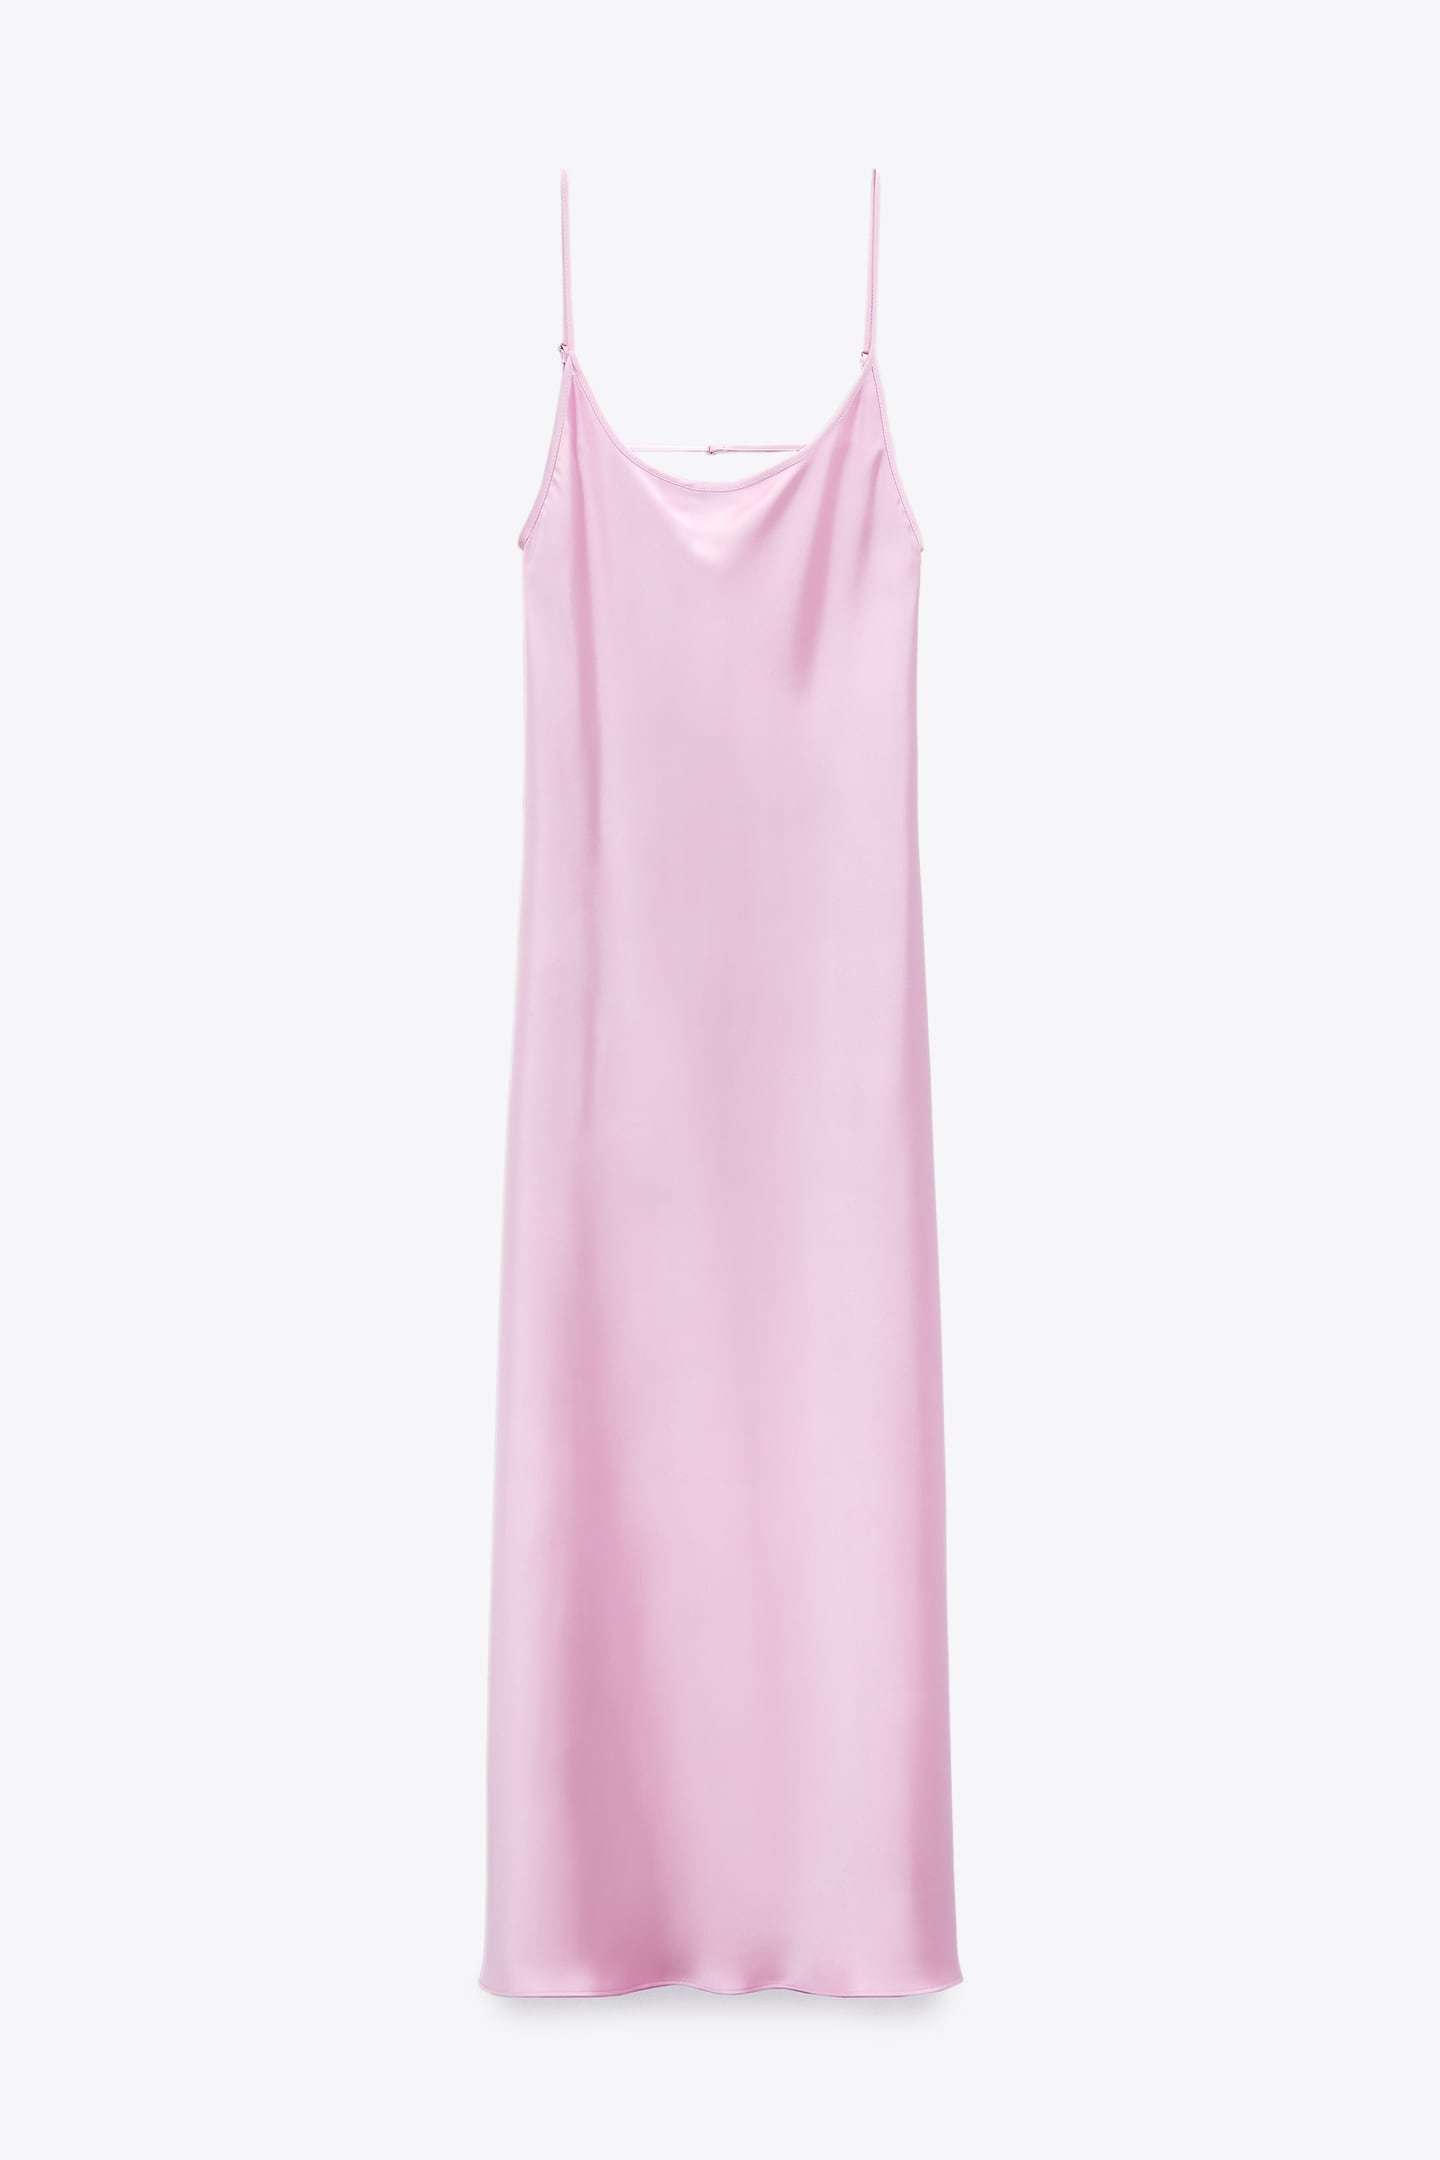 ALT: Este es el vestido lencero de Zara ms deseado para el verano y por un precio increble